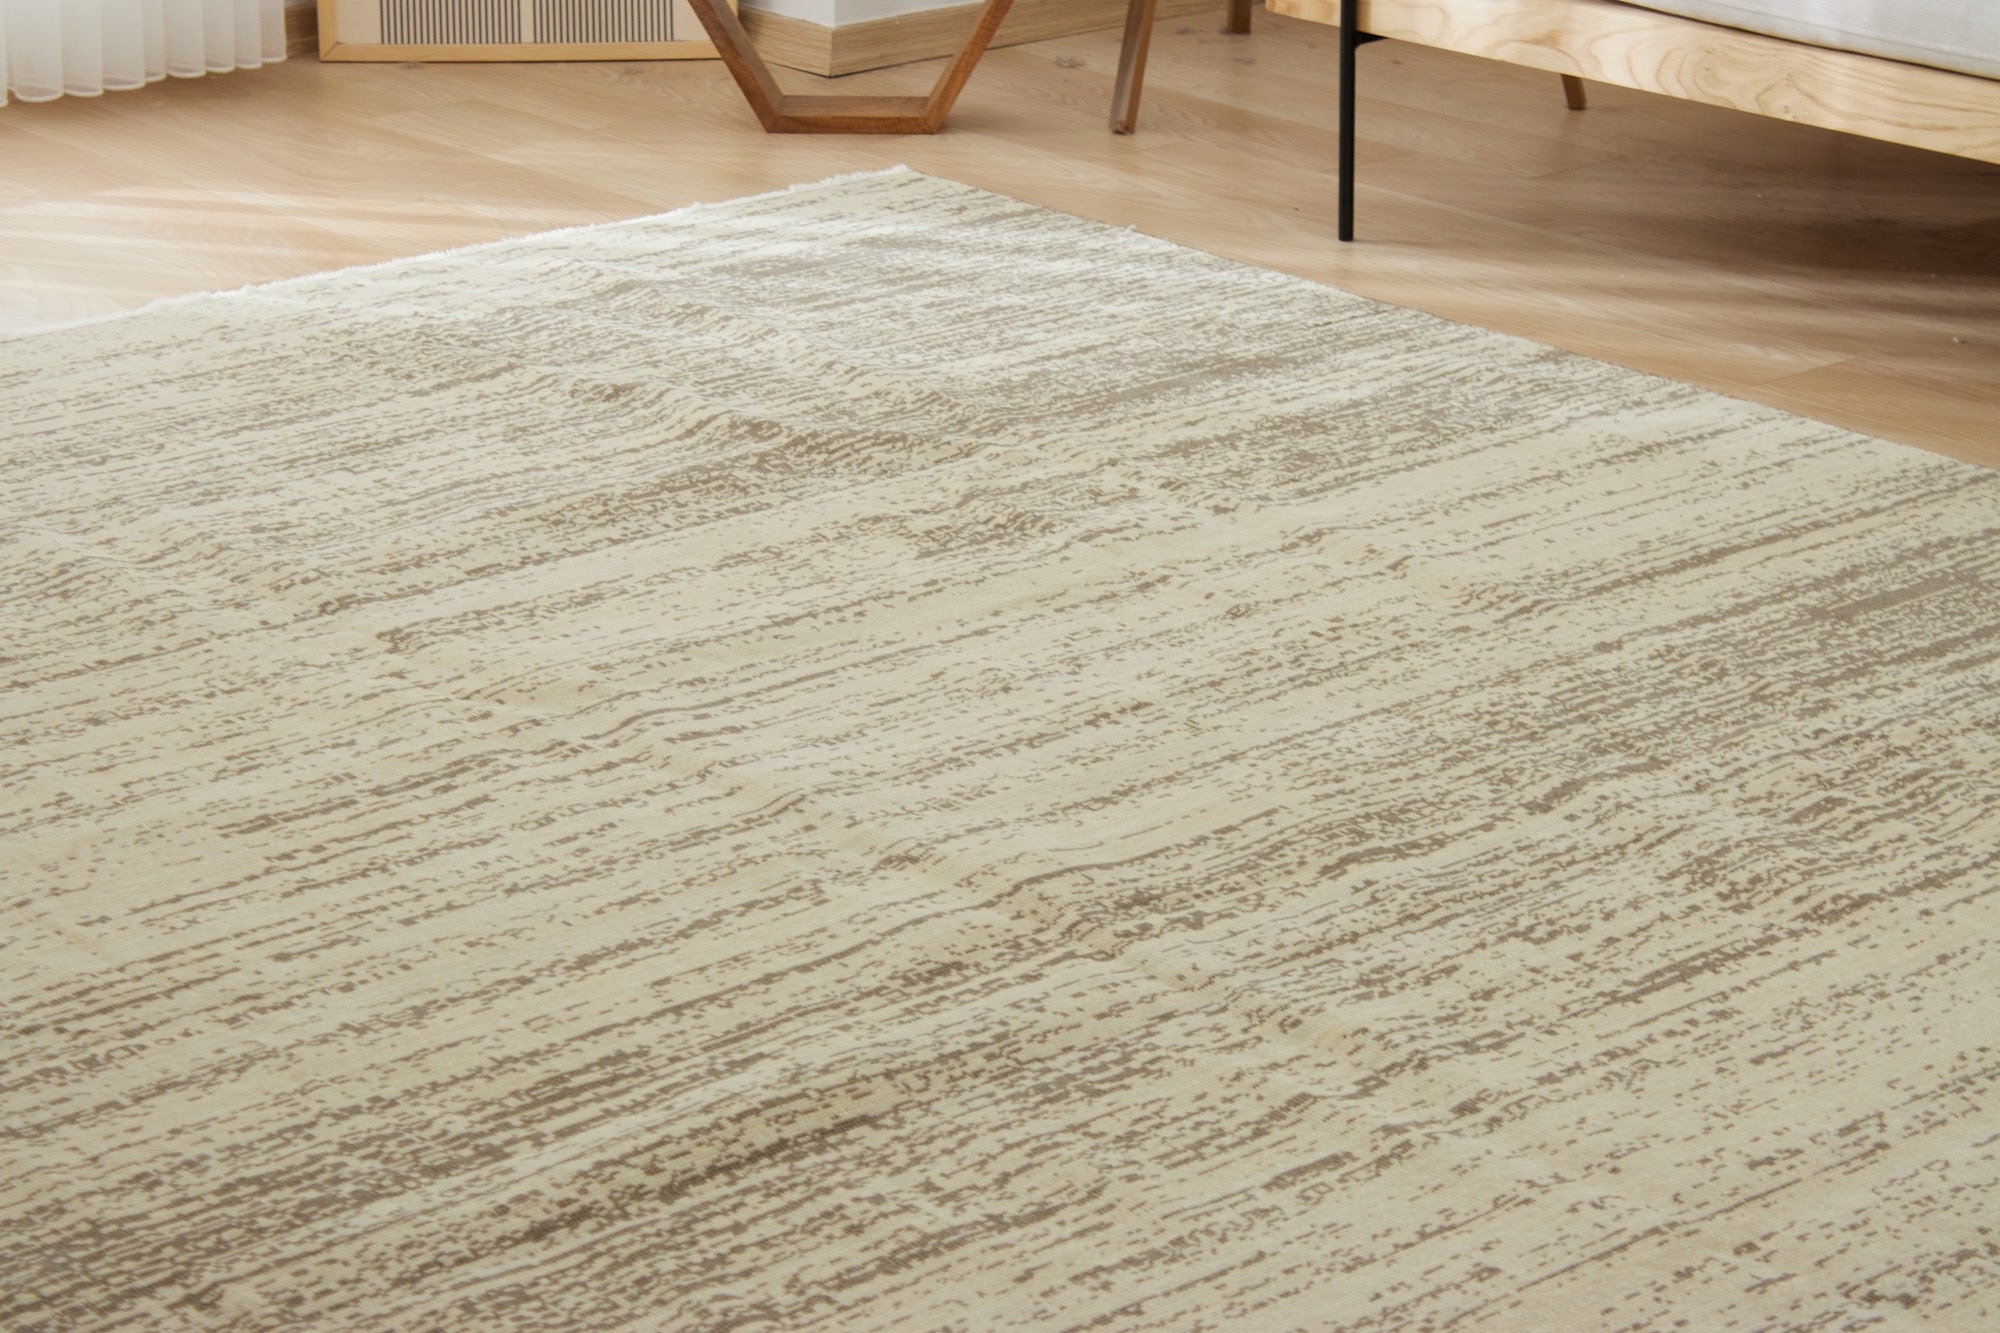 Lahoma | New Oriental-Inspired Artisan Carpet | Kuden Rugs